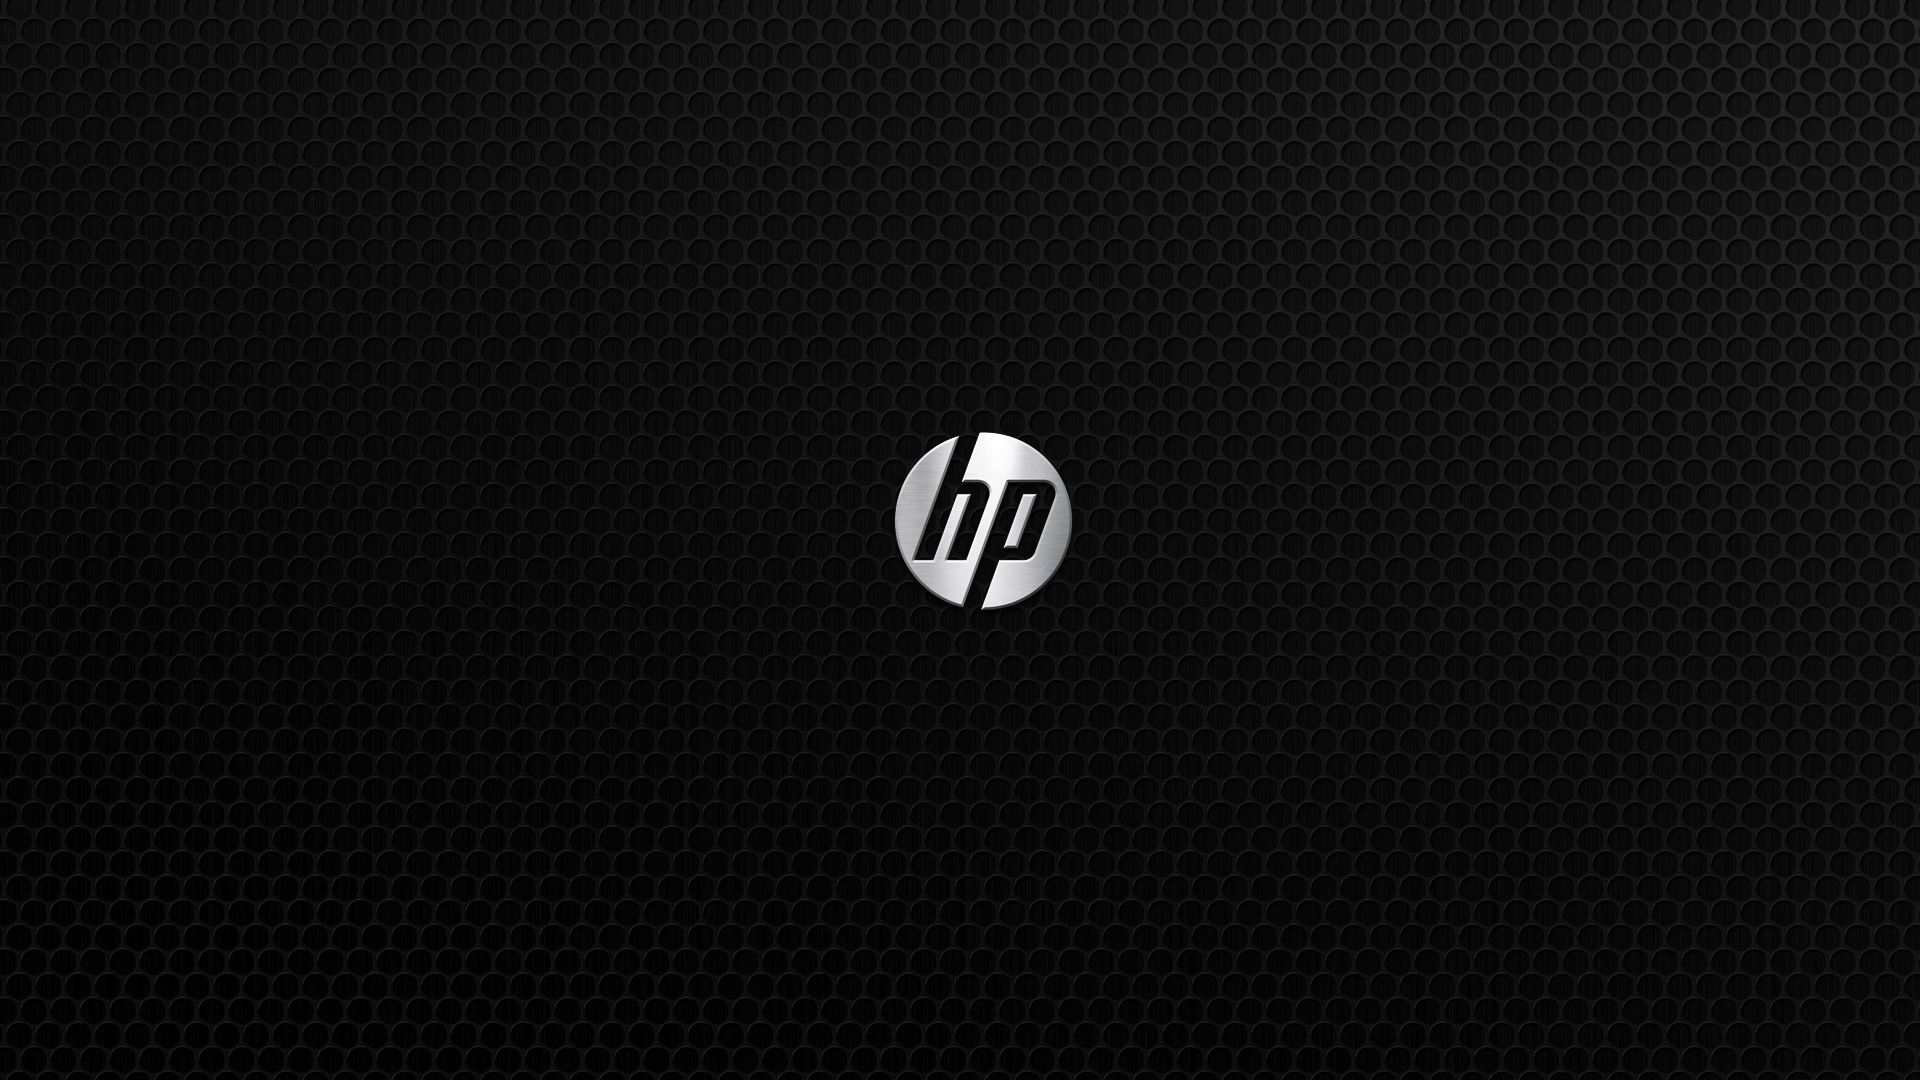 Hewlett Packard Wallpaper, Full HD 1080p, Best HD Hewlett Packard